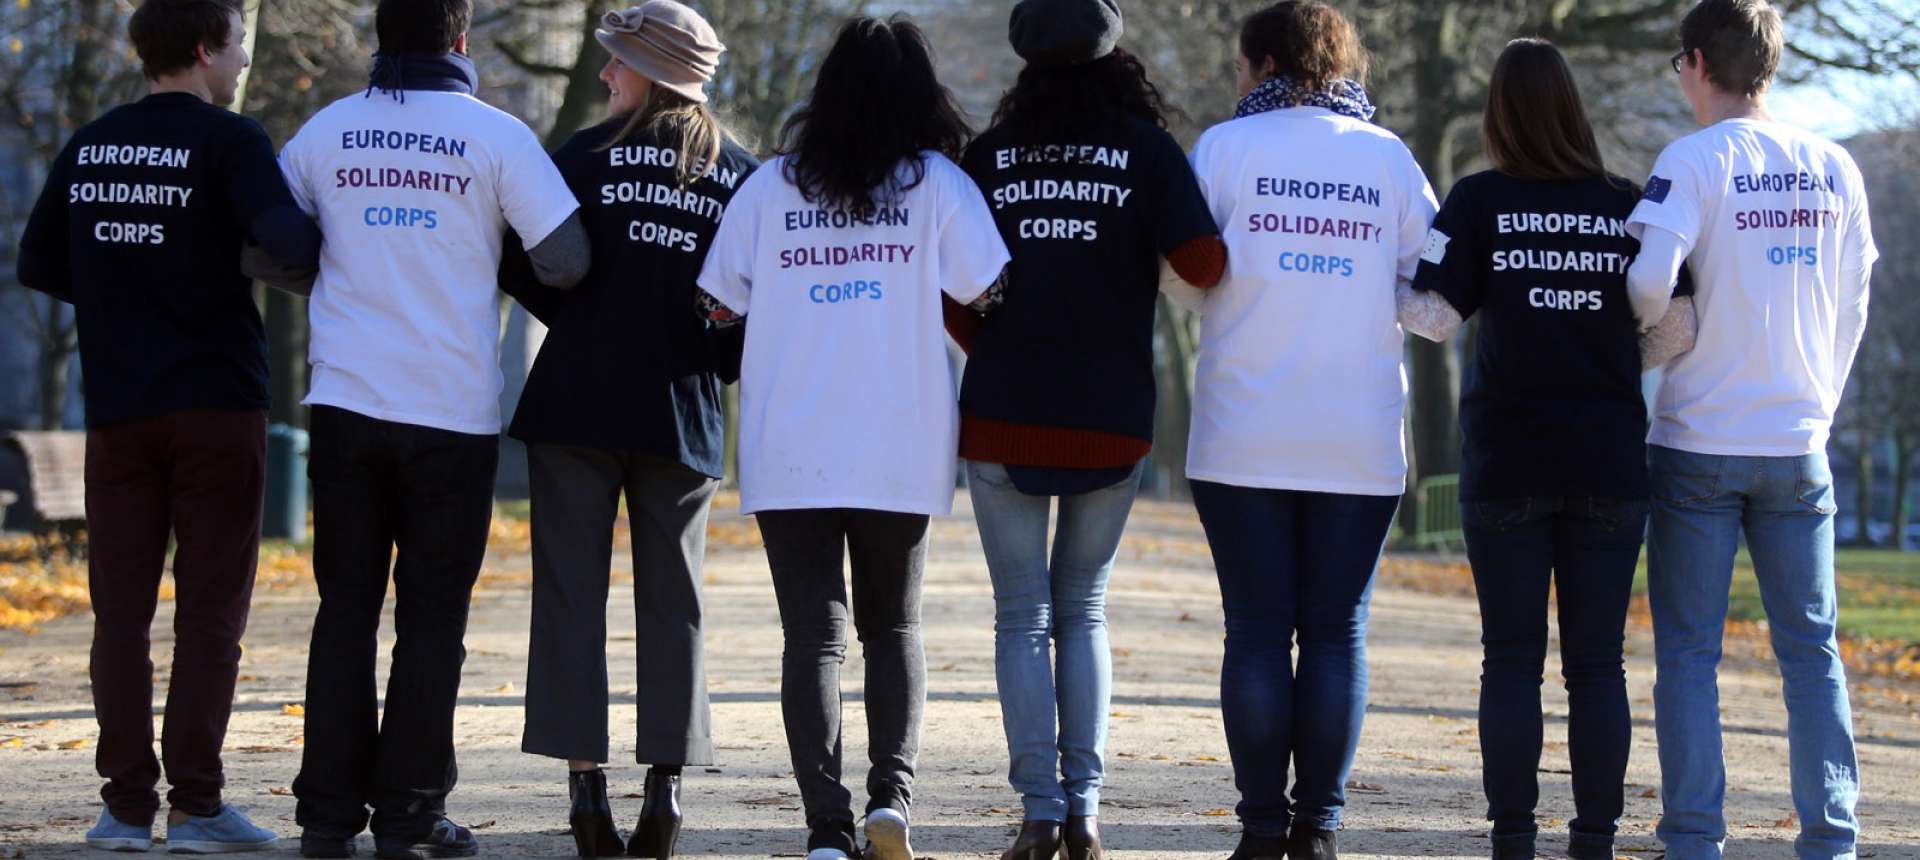 Le Corps européen de solidarité